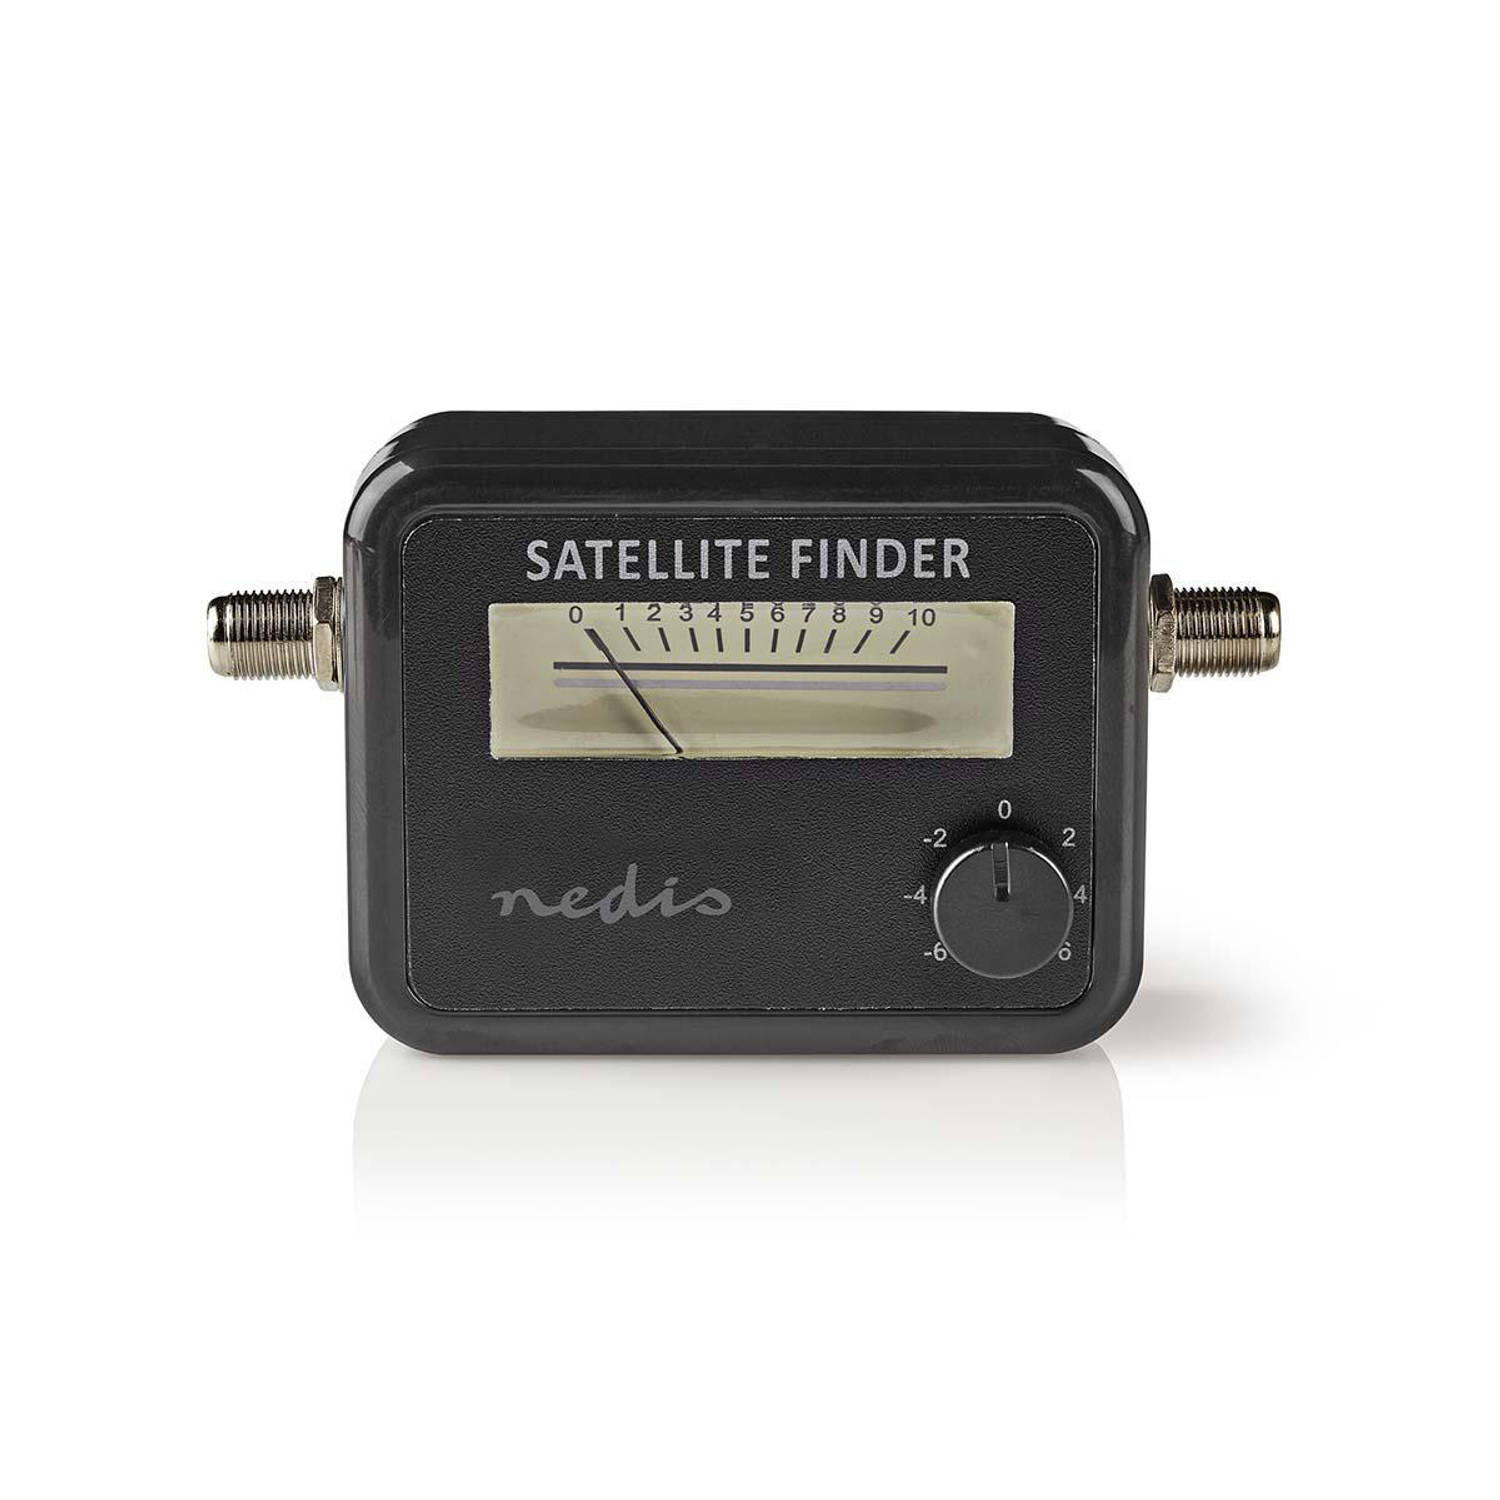 Satellietmeter die de signaalsterkte meet